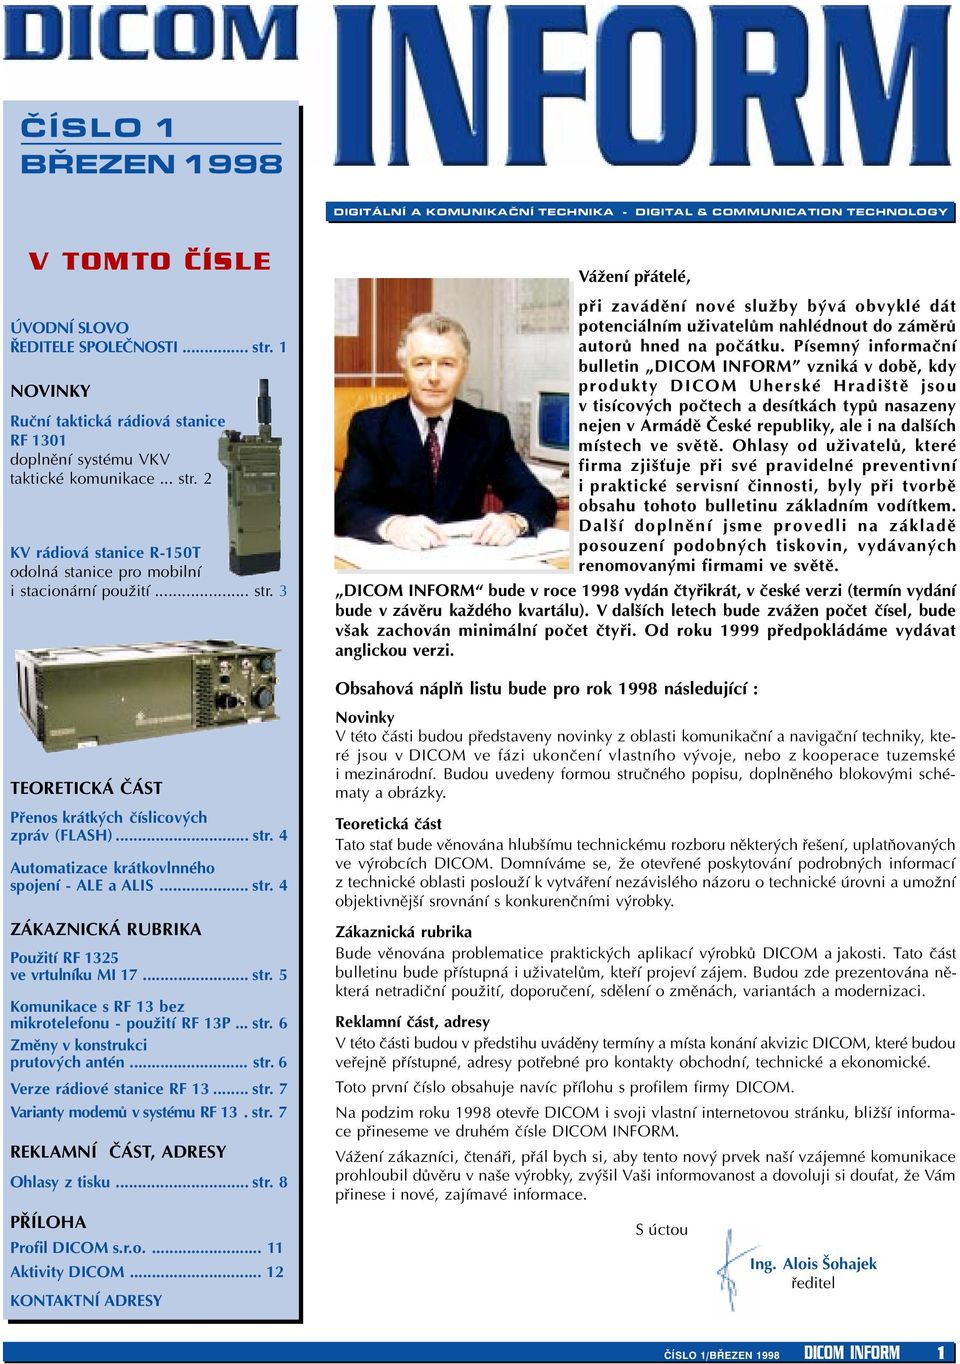 2 KV rádiová stanice R-150T odolná stanice pro mobilní i stacionární použití... str.